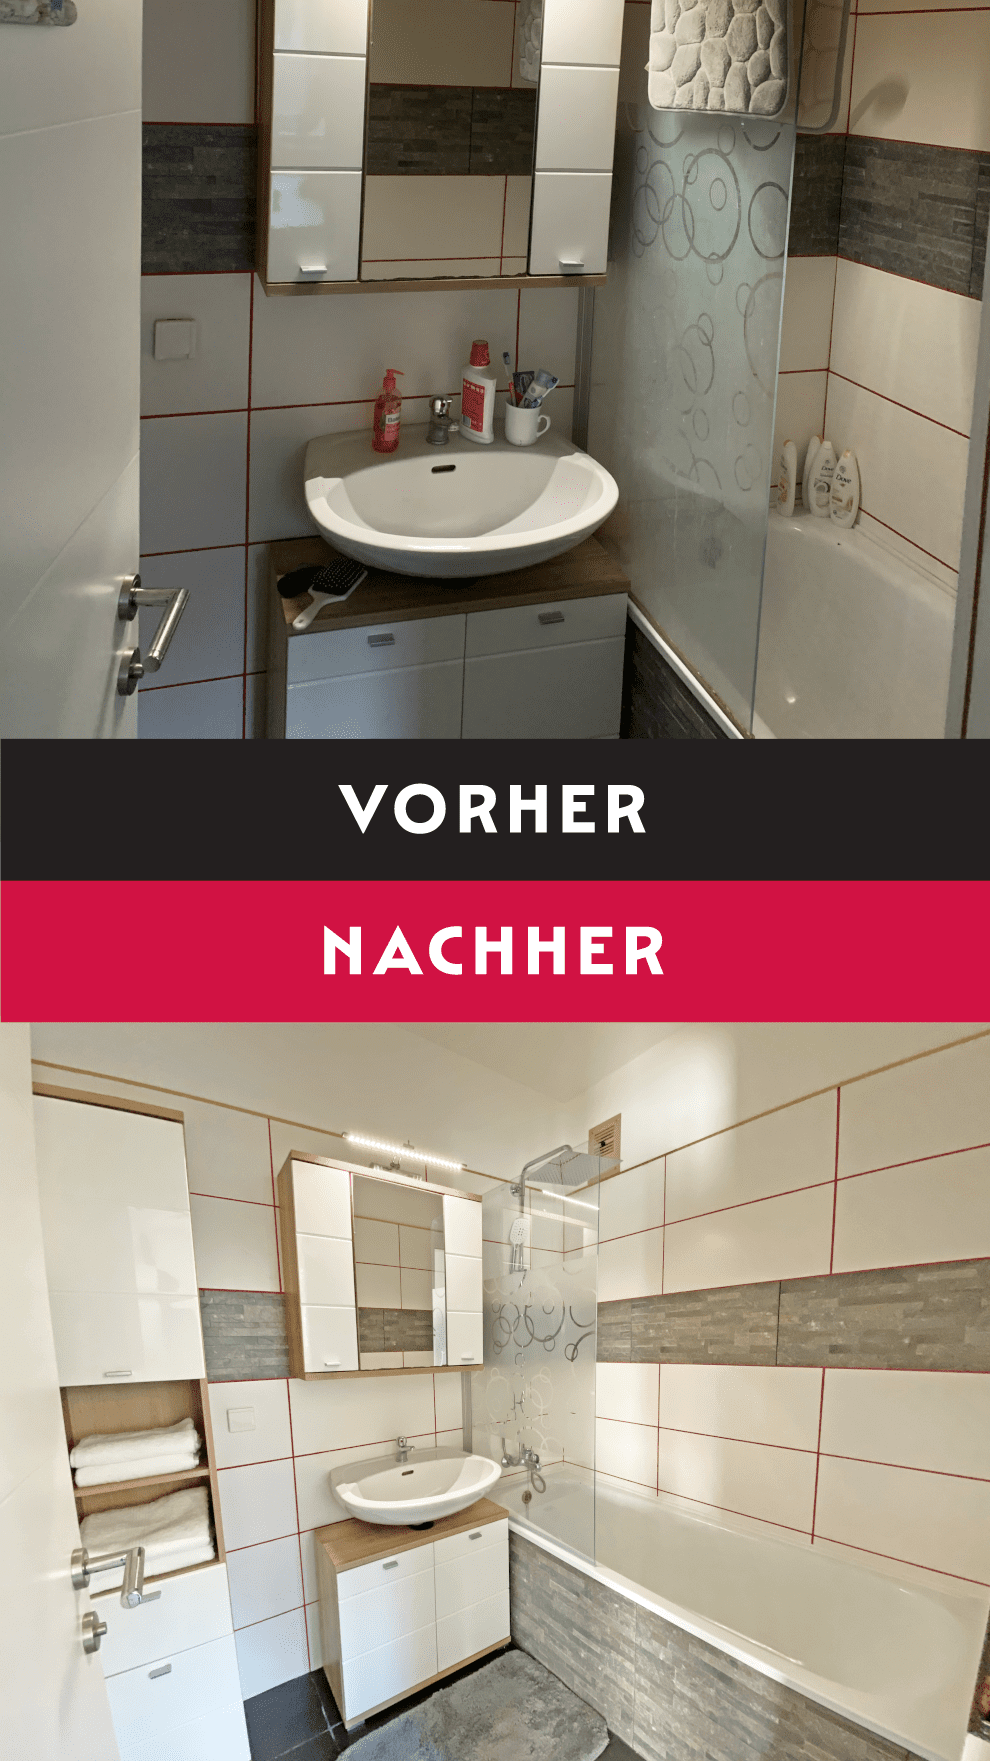 Eine Fotomontage mit Vorher-Nachher-Vergleich von einem Badezimmer mit weißen und grauen Fliesen und einer Badewanne